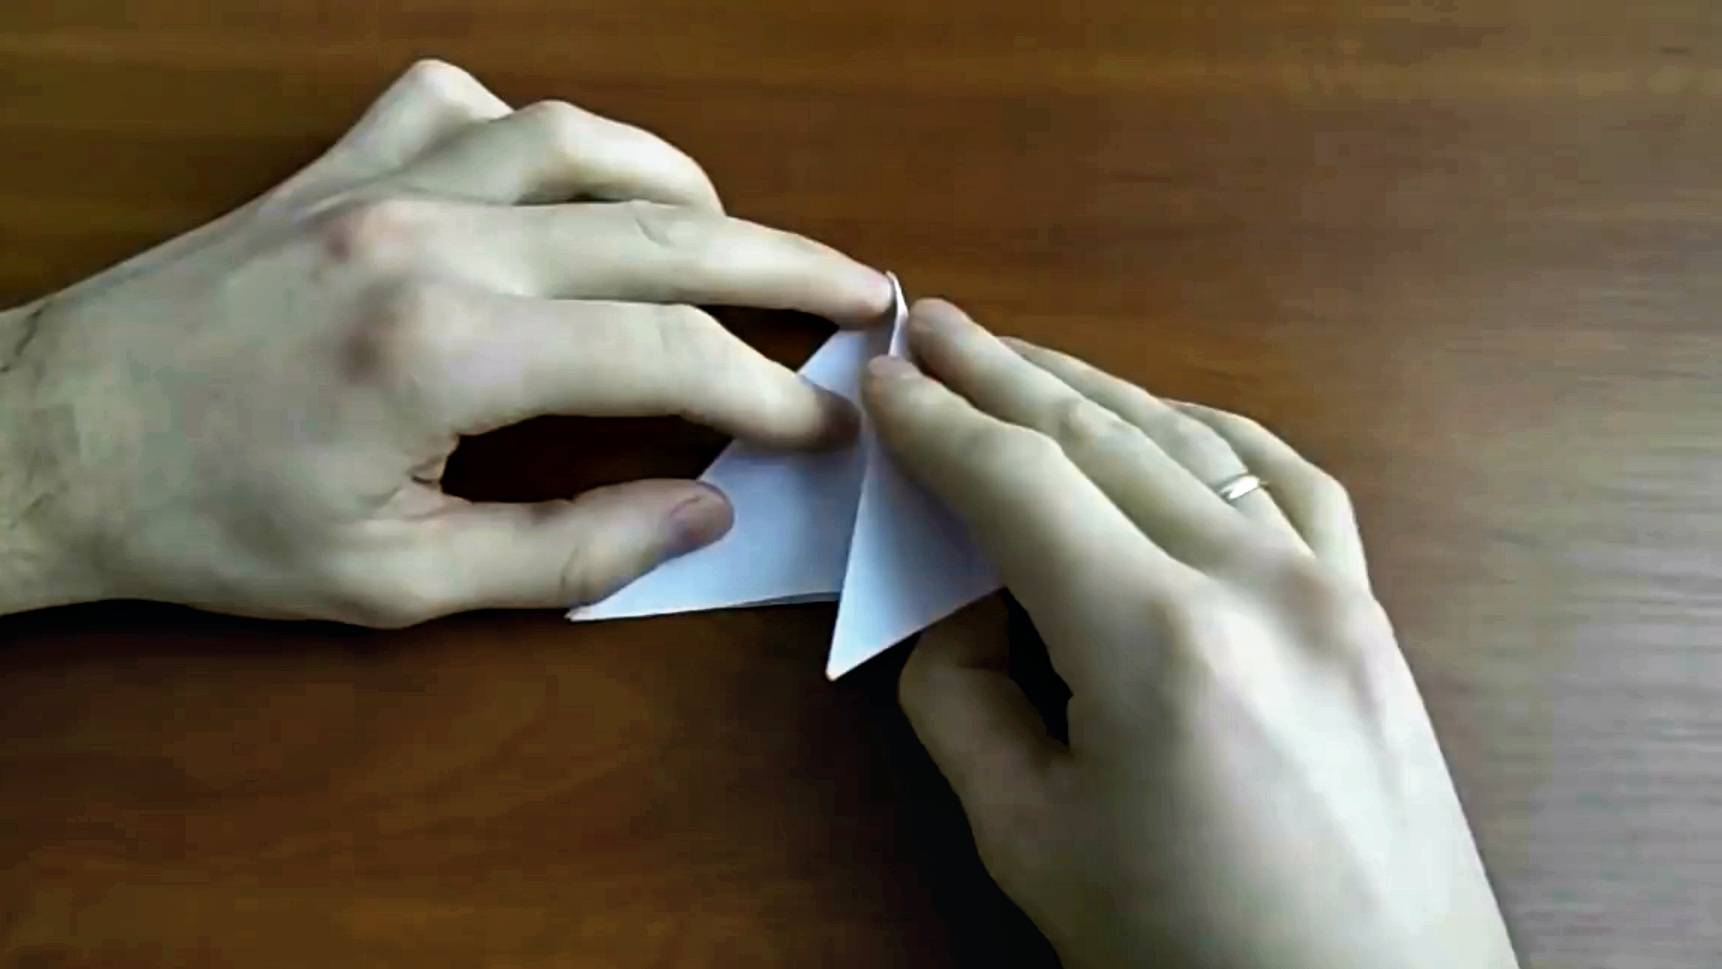 Оригами собачка из бумаги поэтапно